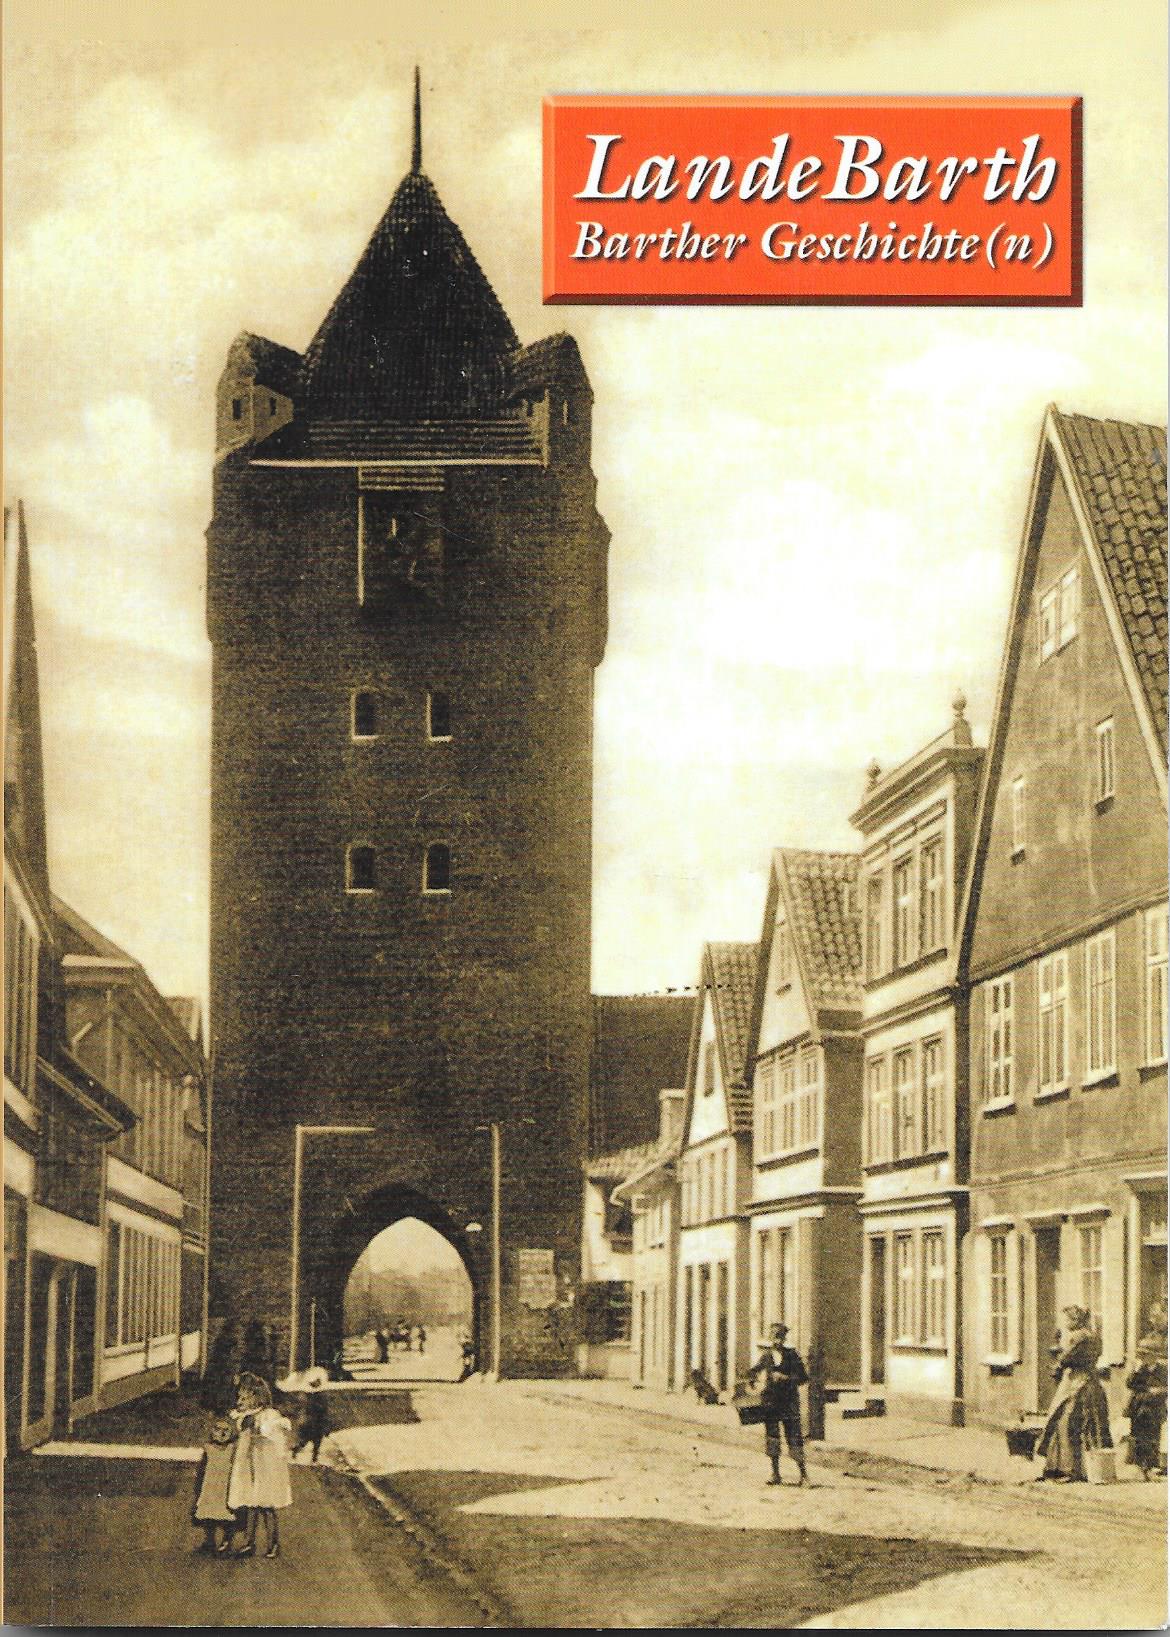 lande Barth Barther Geschichte(n) Jahrgang 5 / 1.Auflage 2013 - Verlag Redieck & Schade GmbH, Barther Heimatverein e.V.